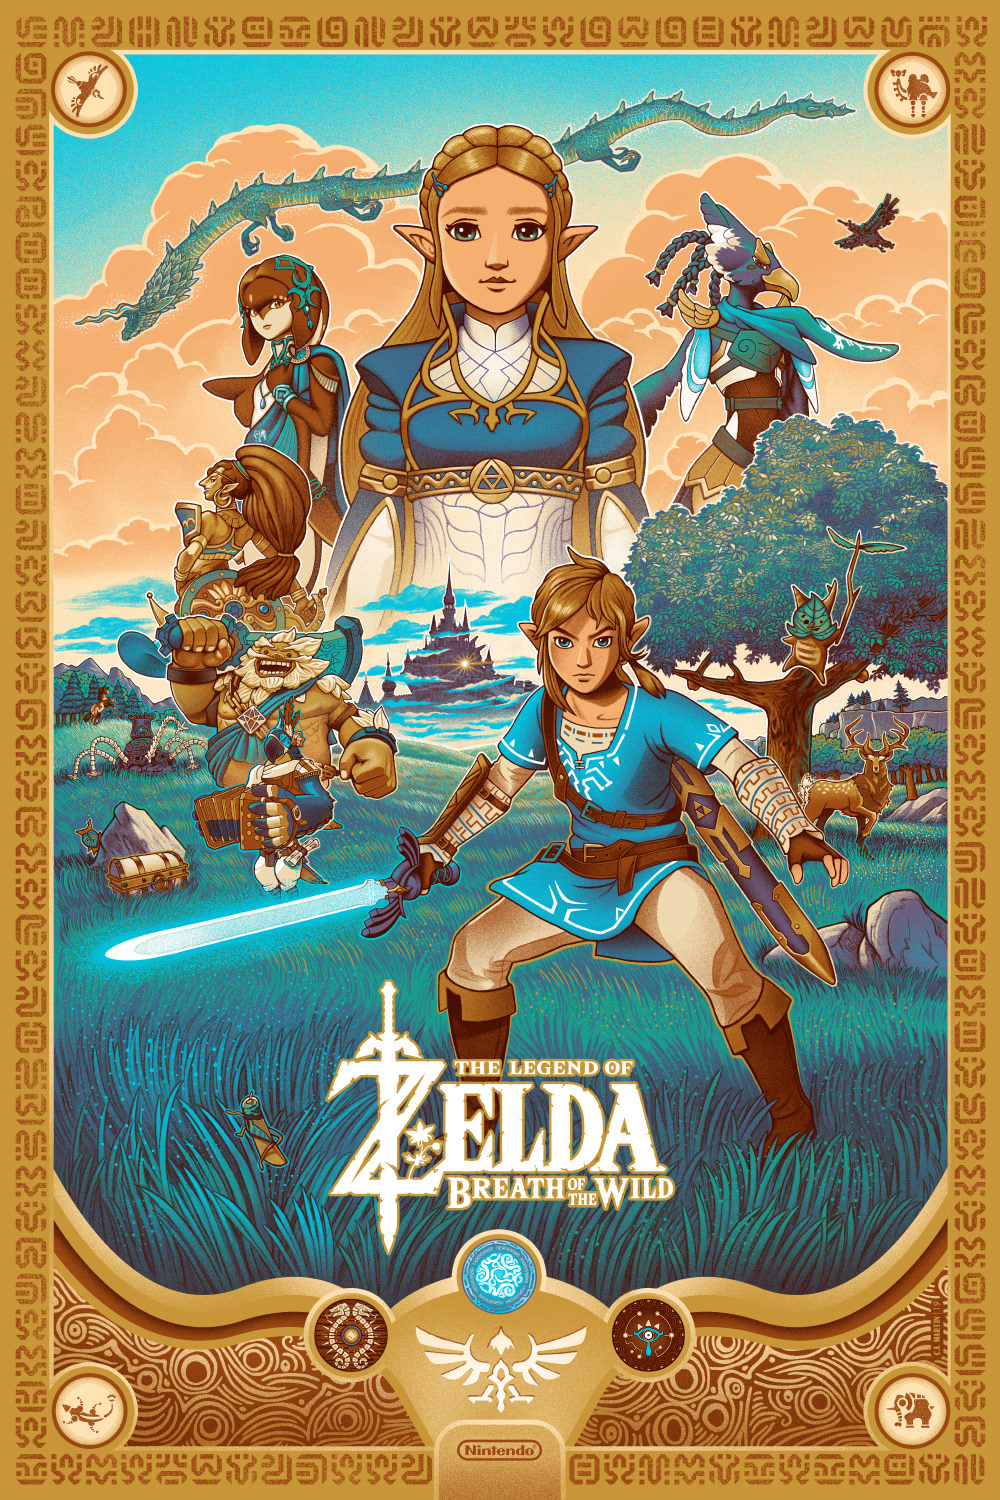 poster Poster Design Nintendo Legend of Zelda breath of Wild illustrated poster